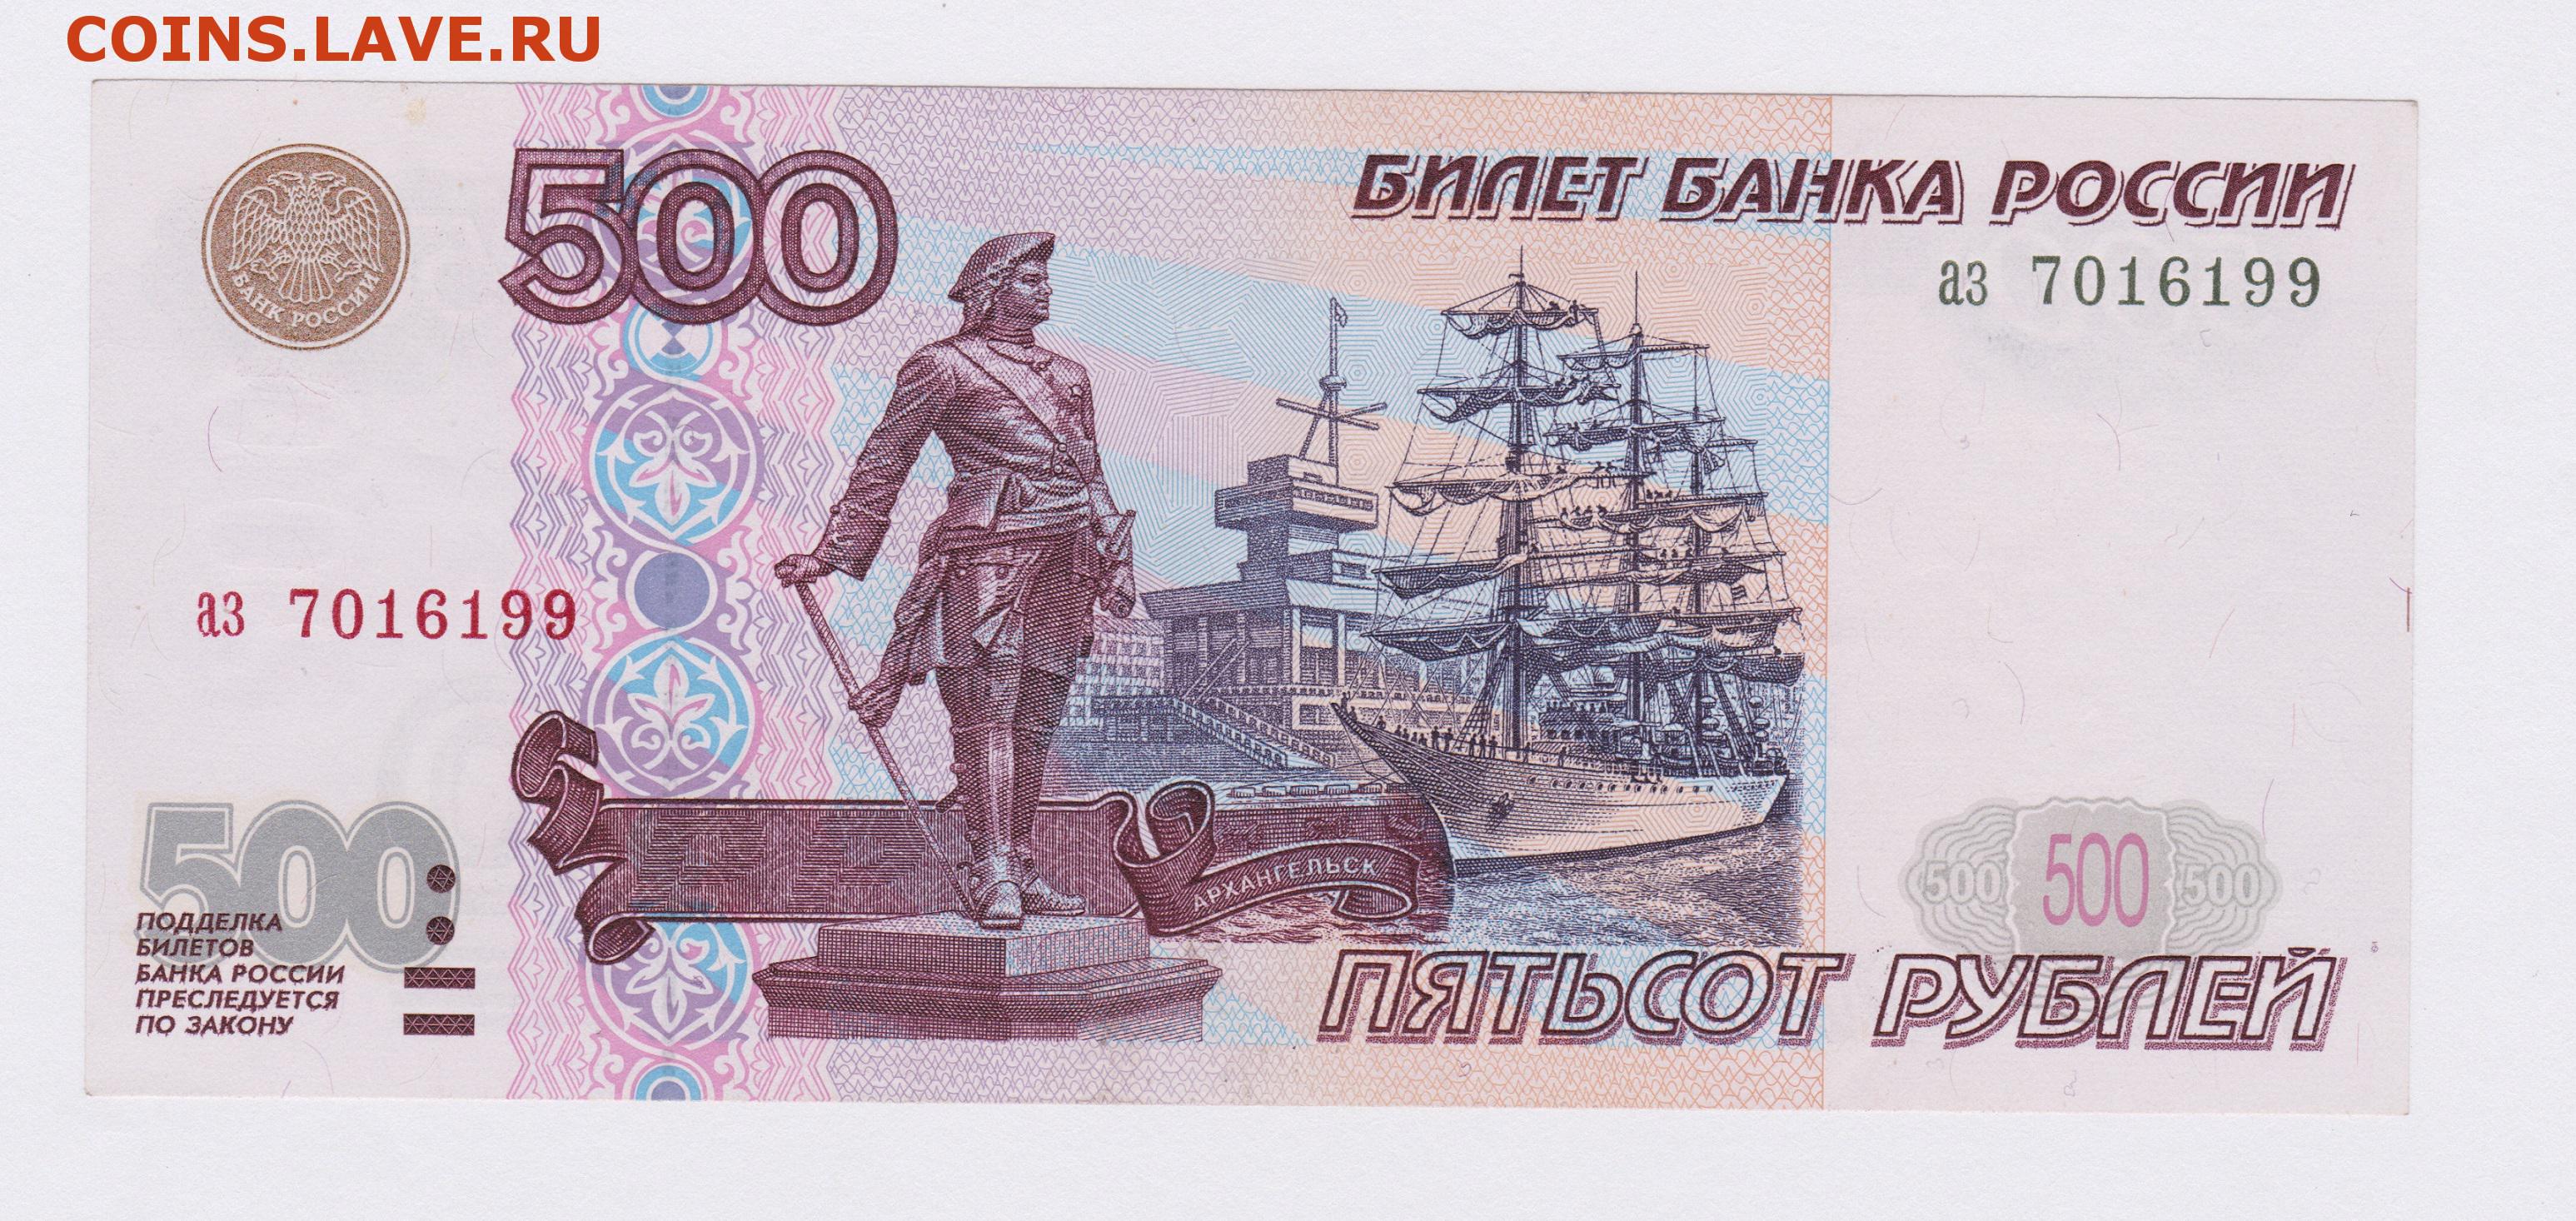 Купюра 32. Купюра 500 рублей. 500 Рублей. Банкнота 500 рублей. 500 Рублей изображение на купюре.